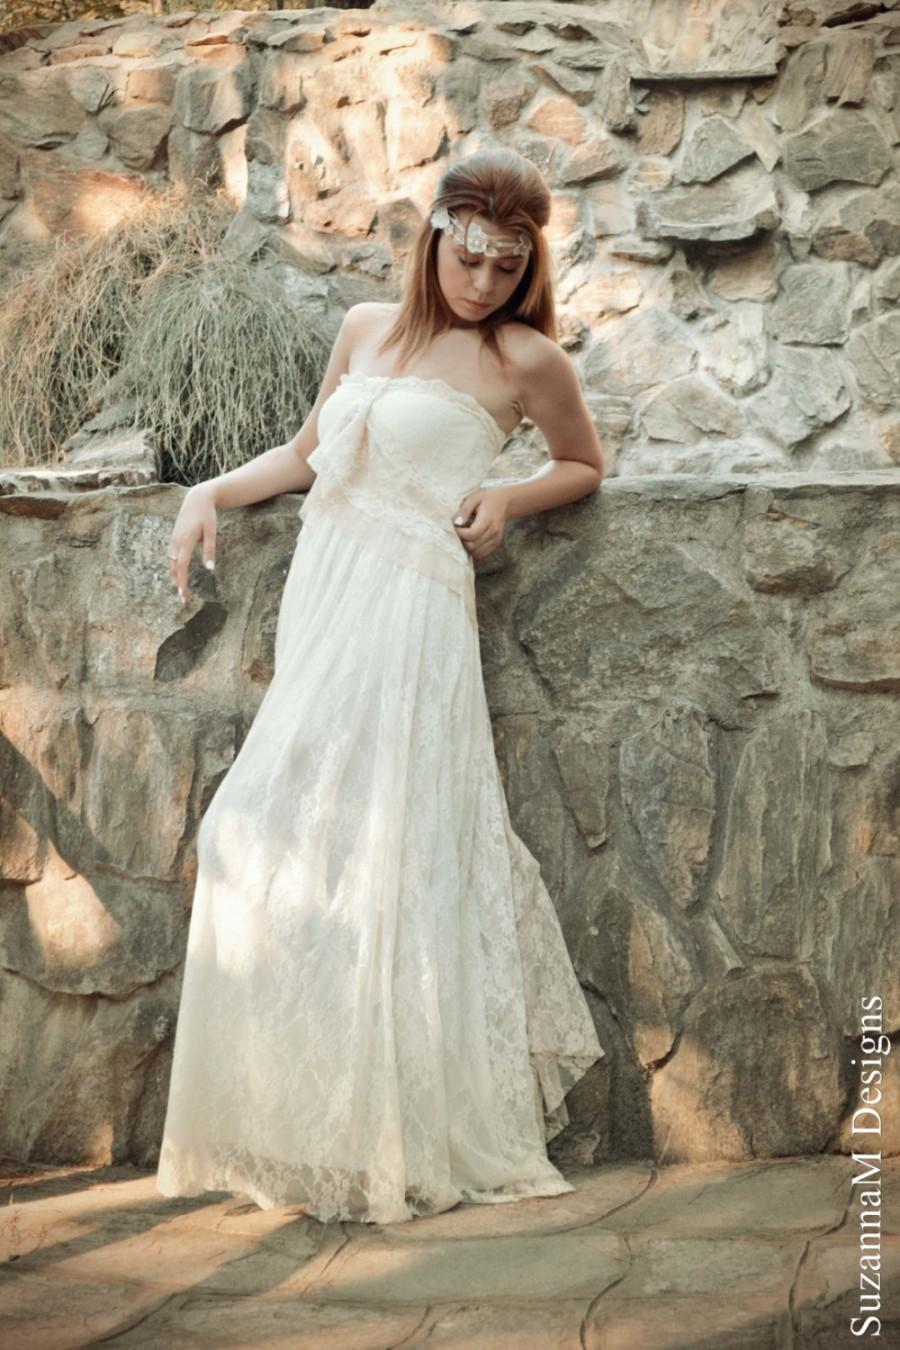 زفاف - Ivory Lace Bohemian Wedding Dress Long Strappless Bridal Wedding Retro Gown with Cream Lace Details - Handmade by SuzannaM Designs